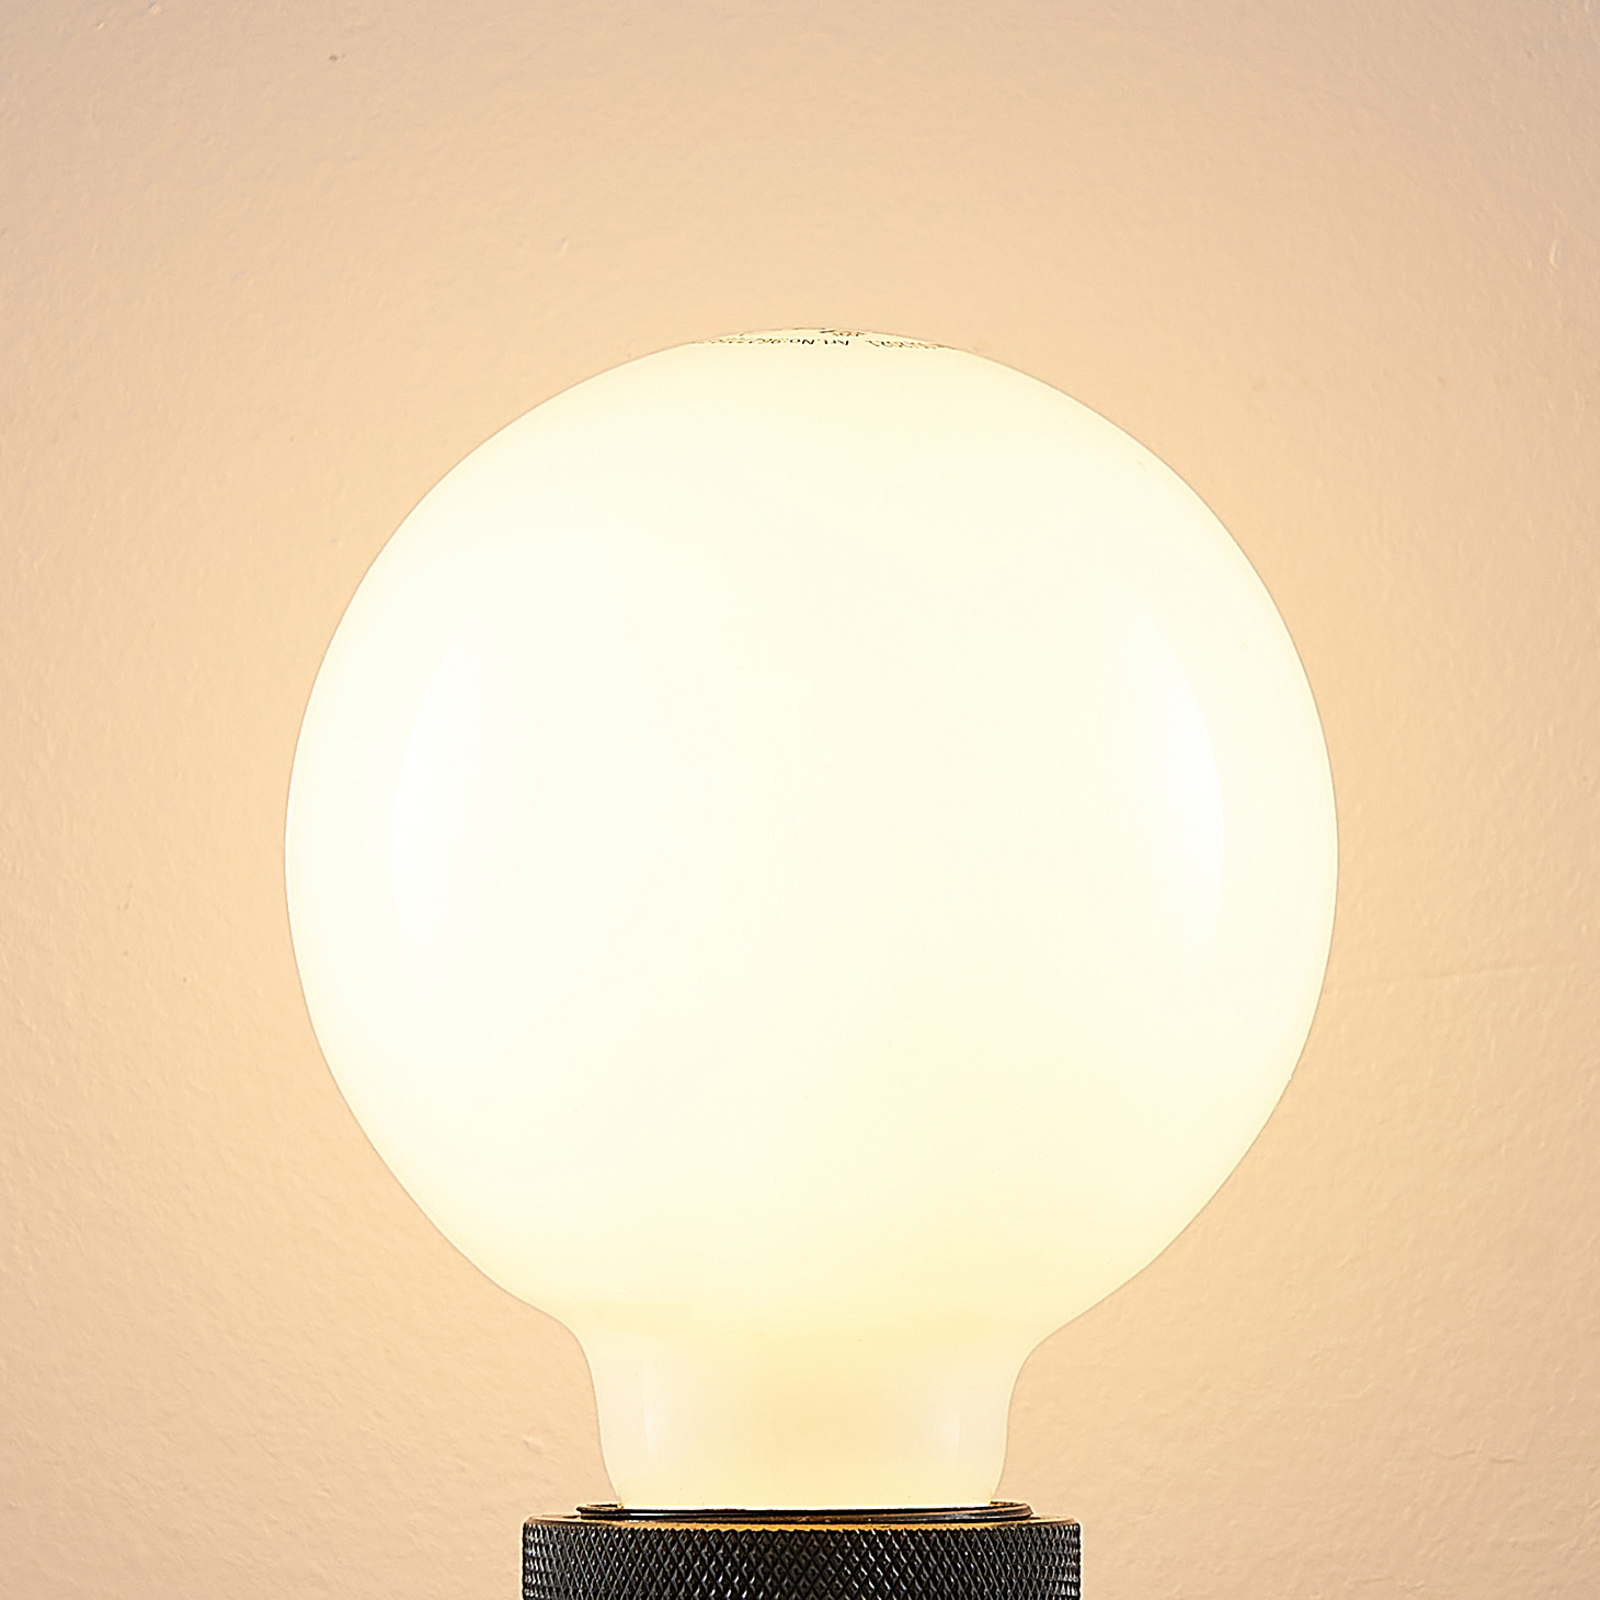 LED-Lampe E27 8W 2.700K G95 Globe, dimmbar, opal